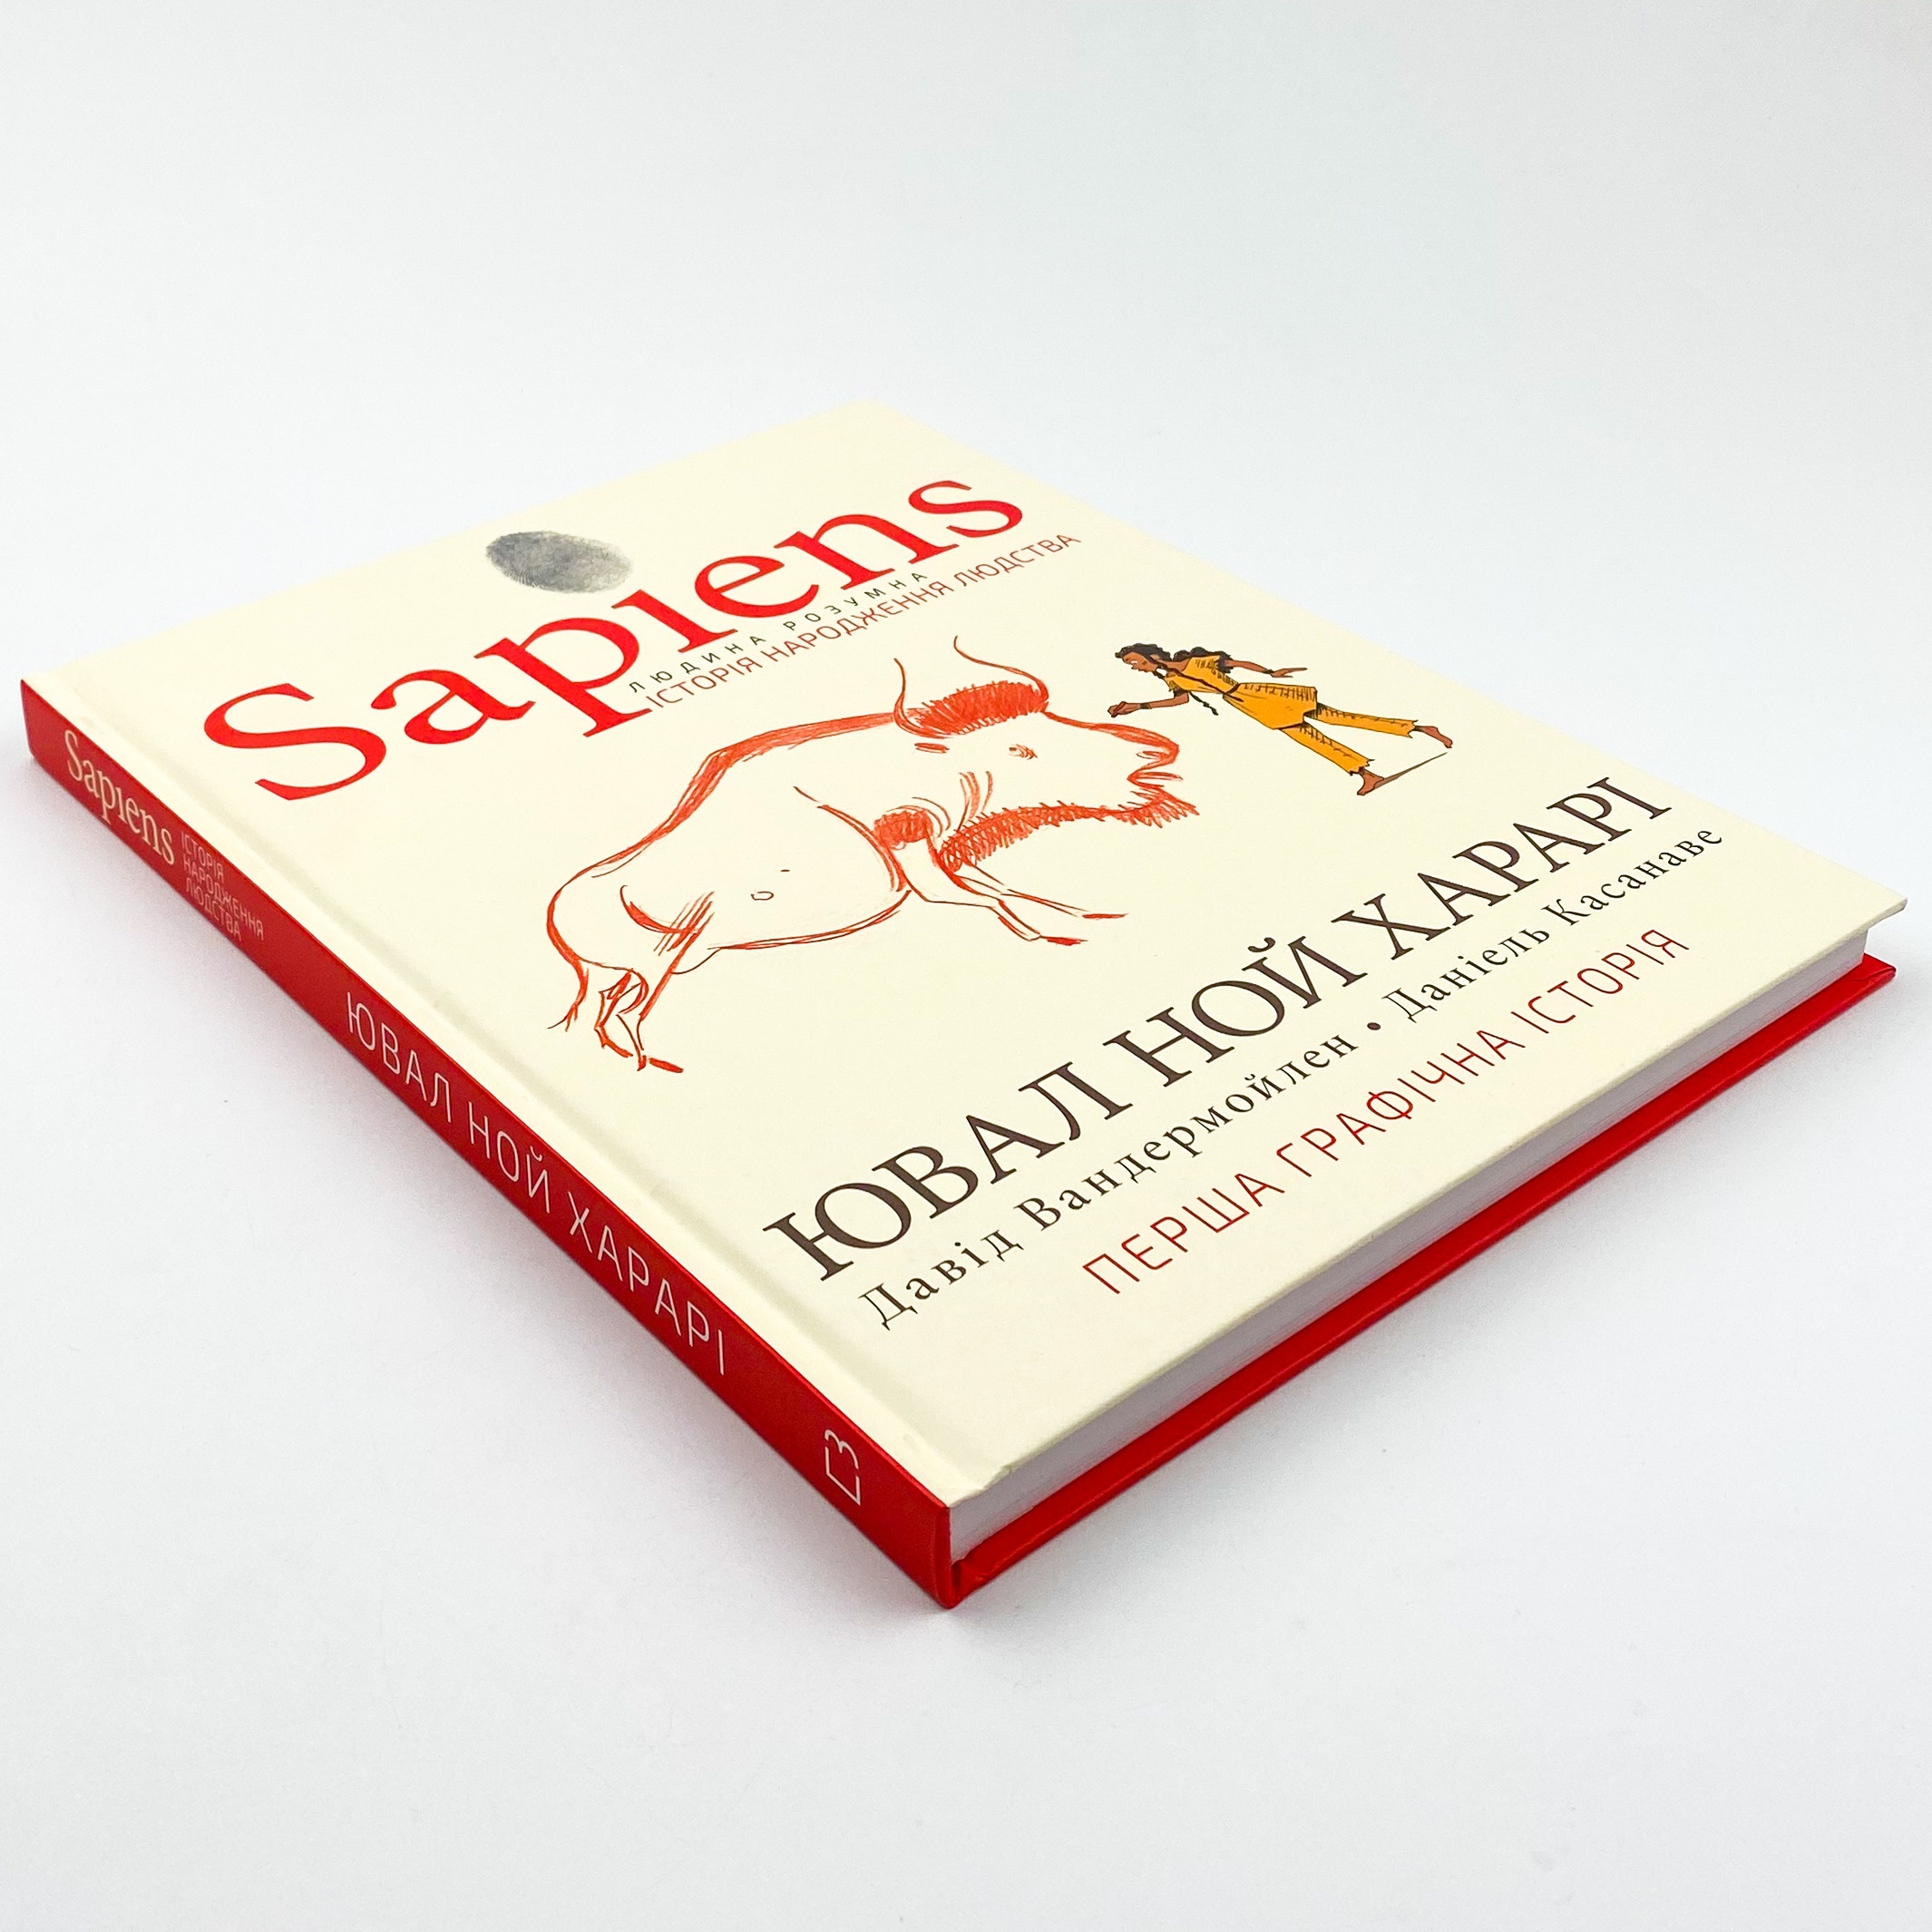 Sapiens. Історія народження людства. Том 1. Автор — Ювал Ной Харарі, Девід Вандермьолен. 